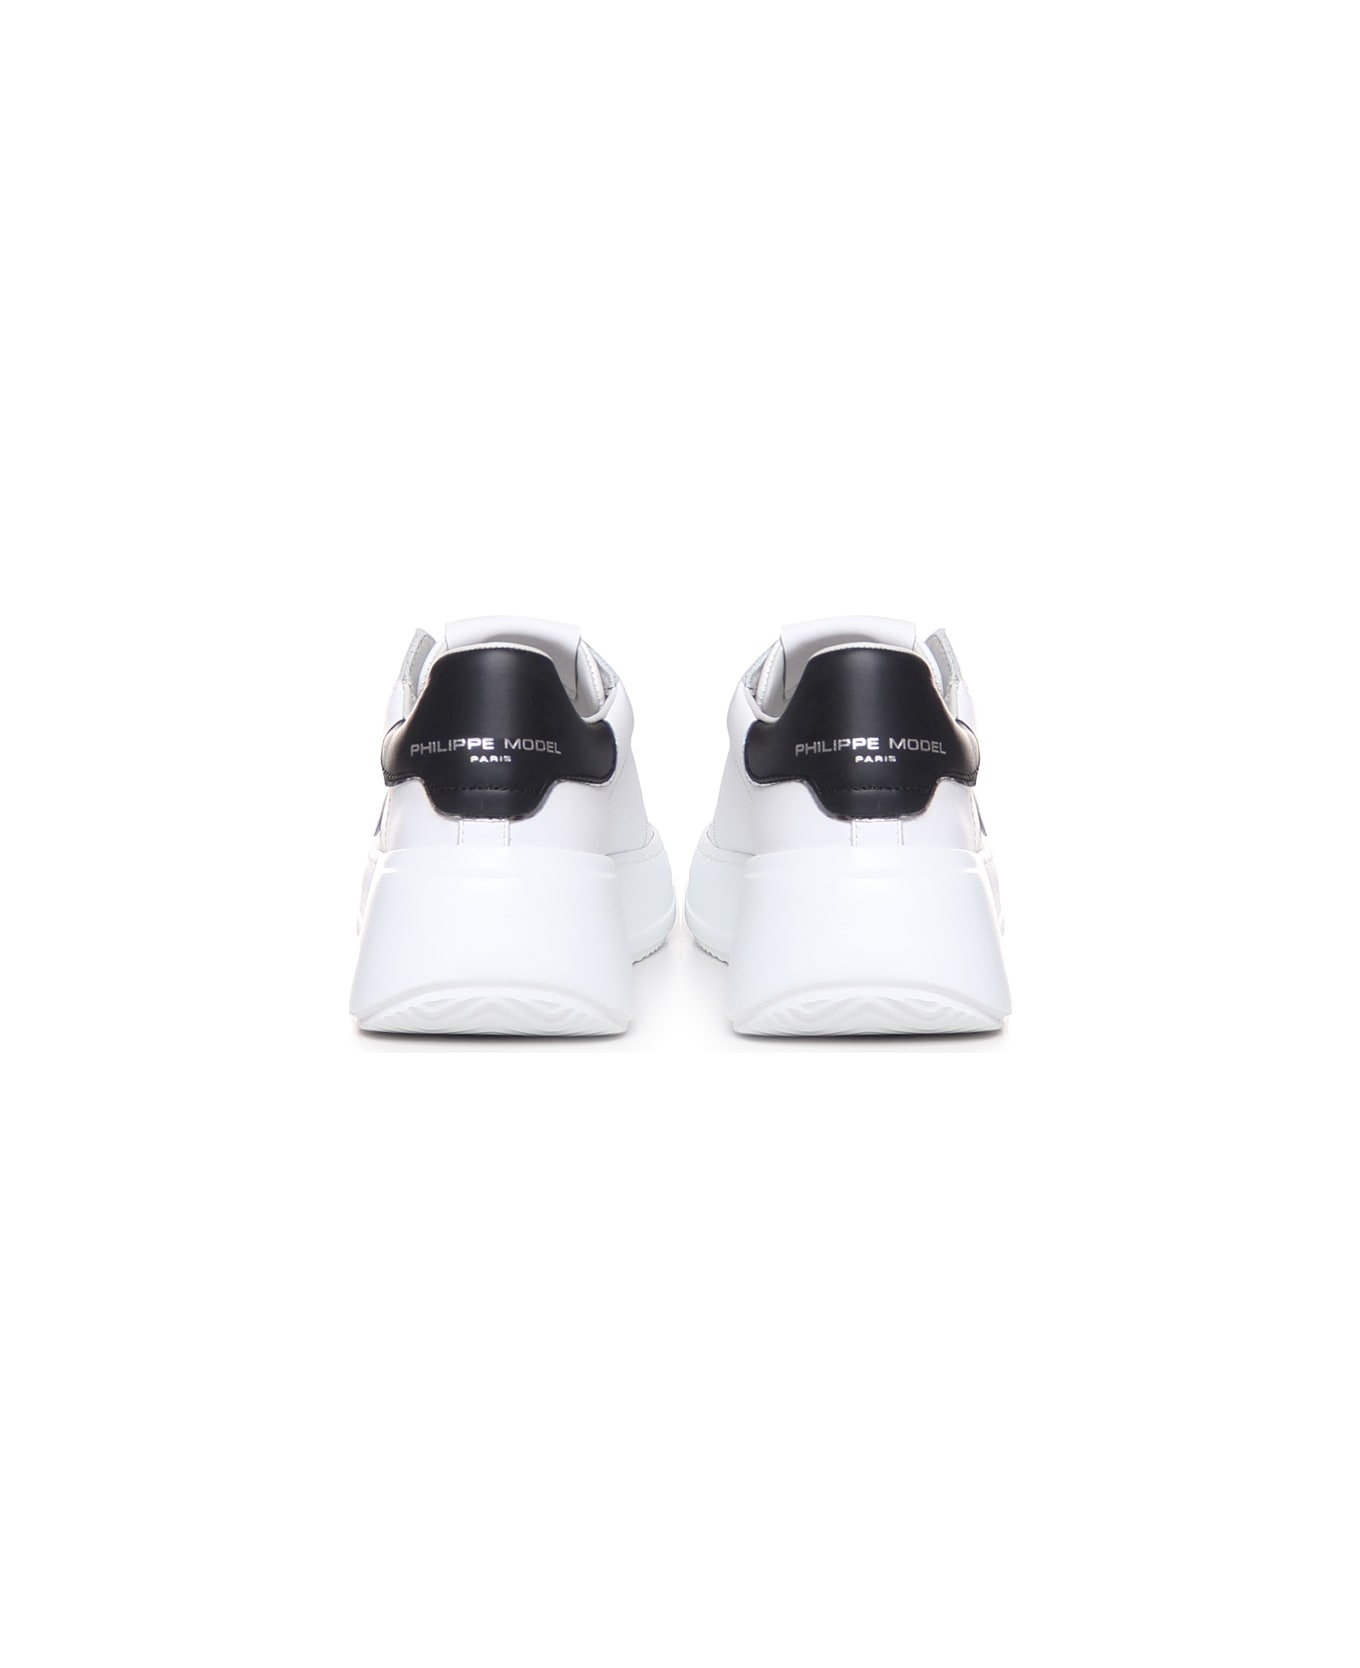 Philippe Model Temple Sneakers - Veau_blanc noir